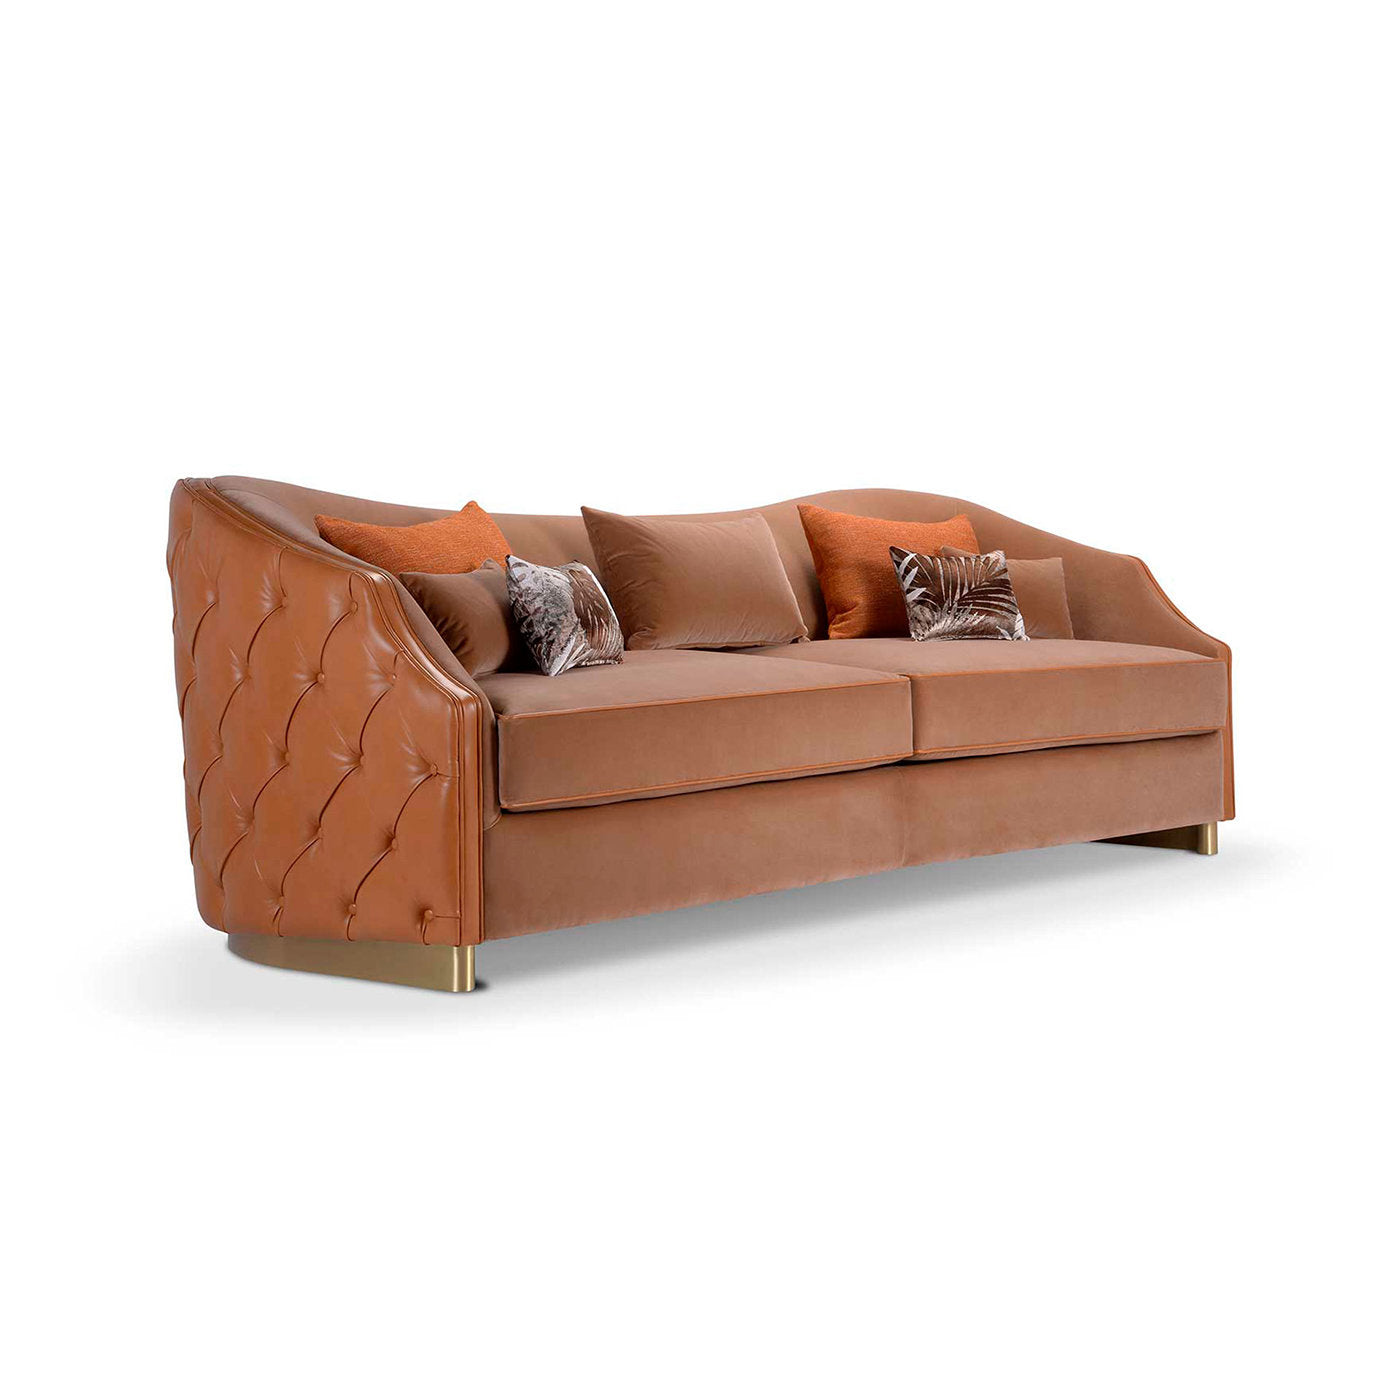 Cleio 3-Seater Leather Sofa - Alternative view 1